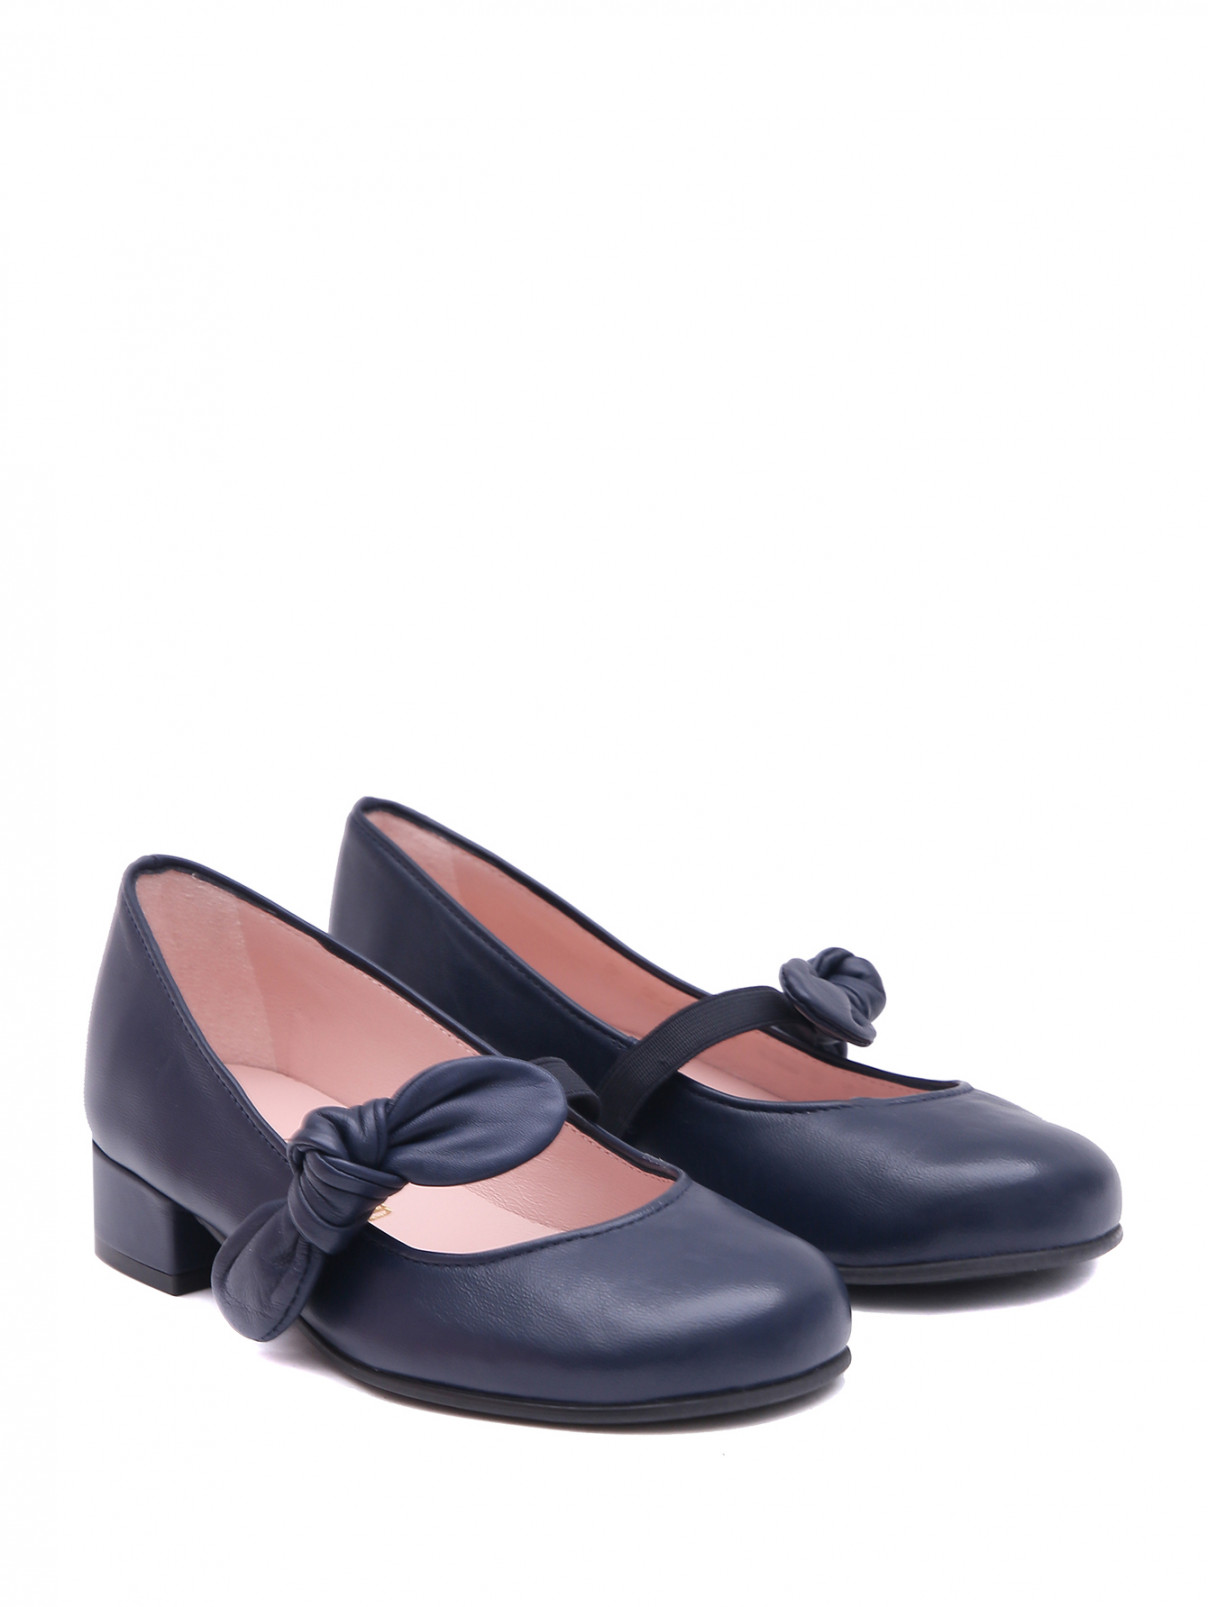 Кожаные туфли на каблуке с бантиком Pretty Ballerinas  –  Общий вид  – Цвет:  Синий